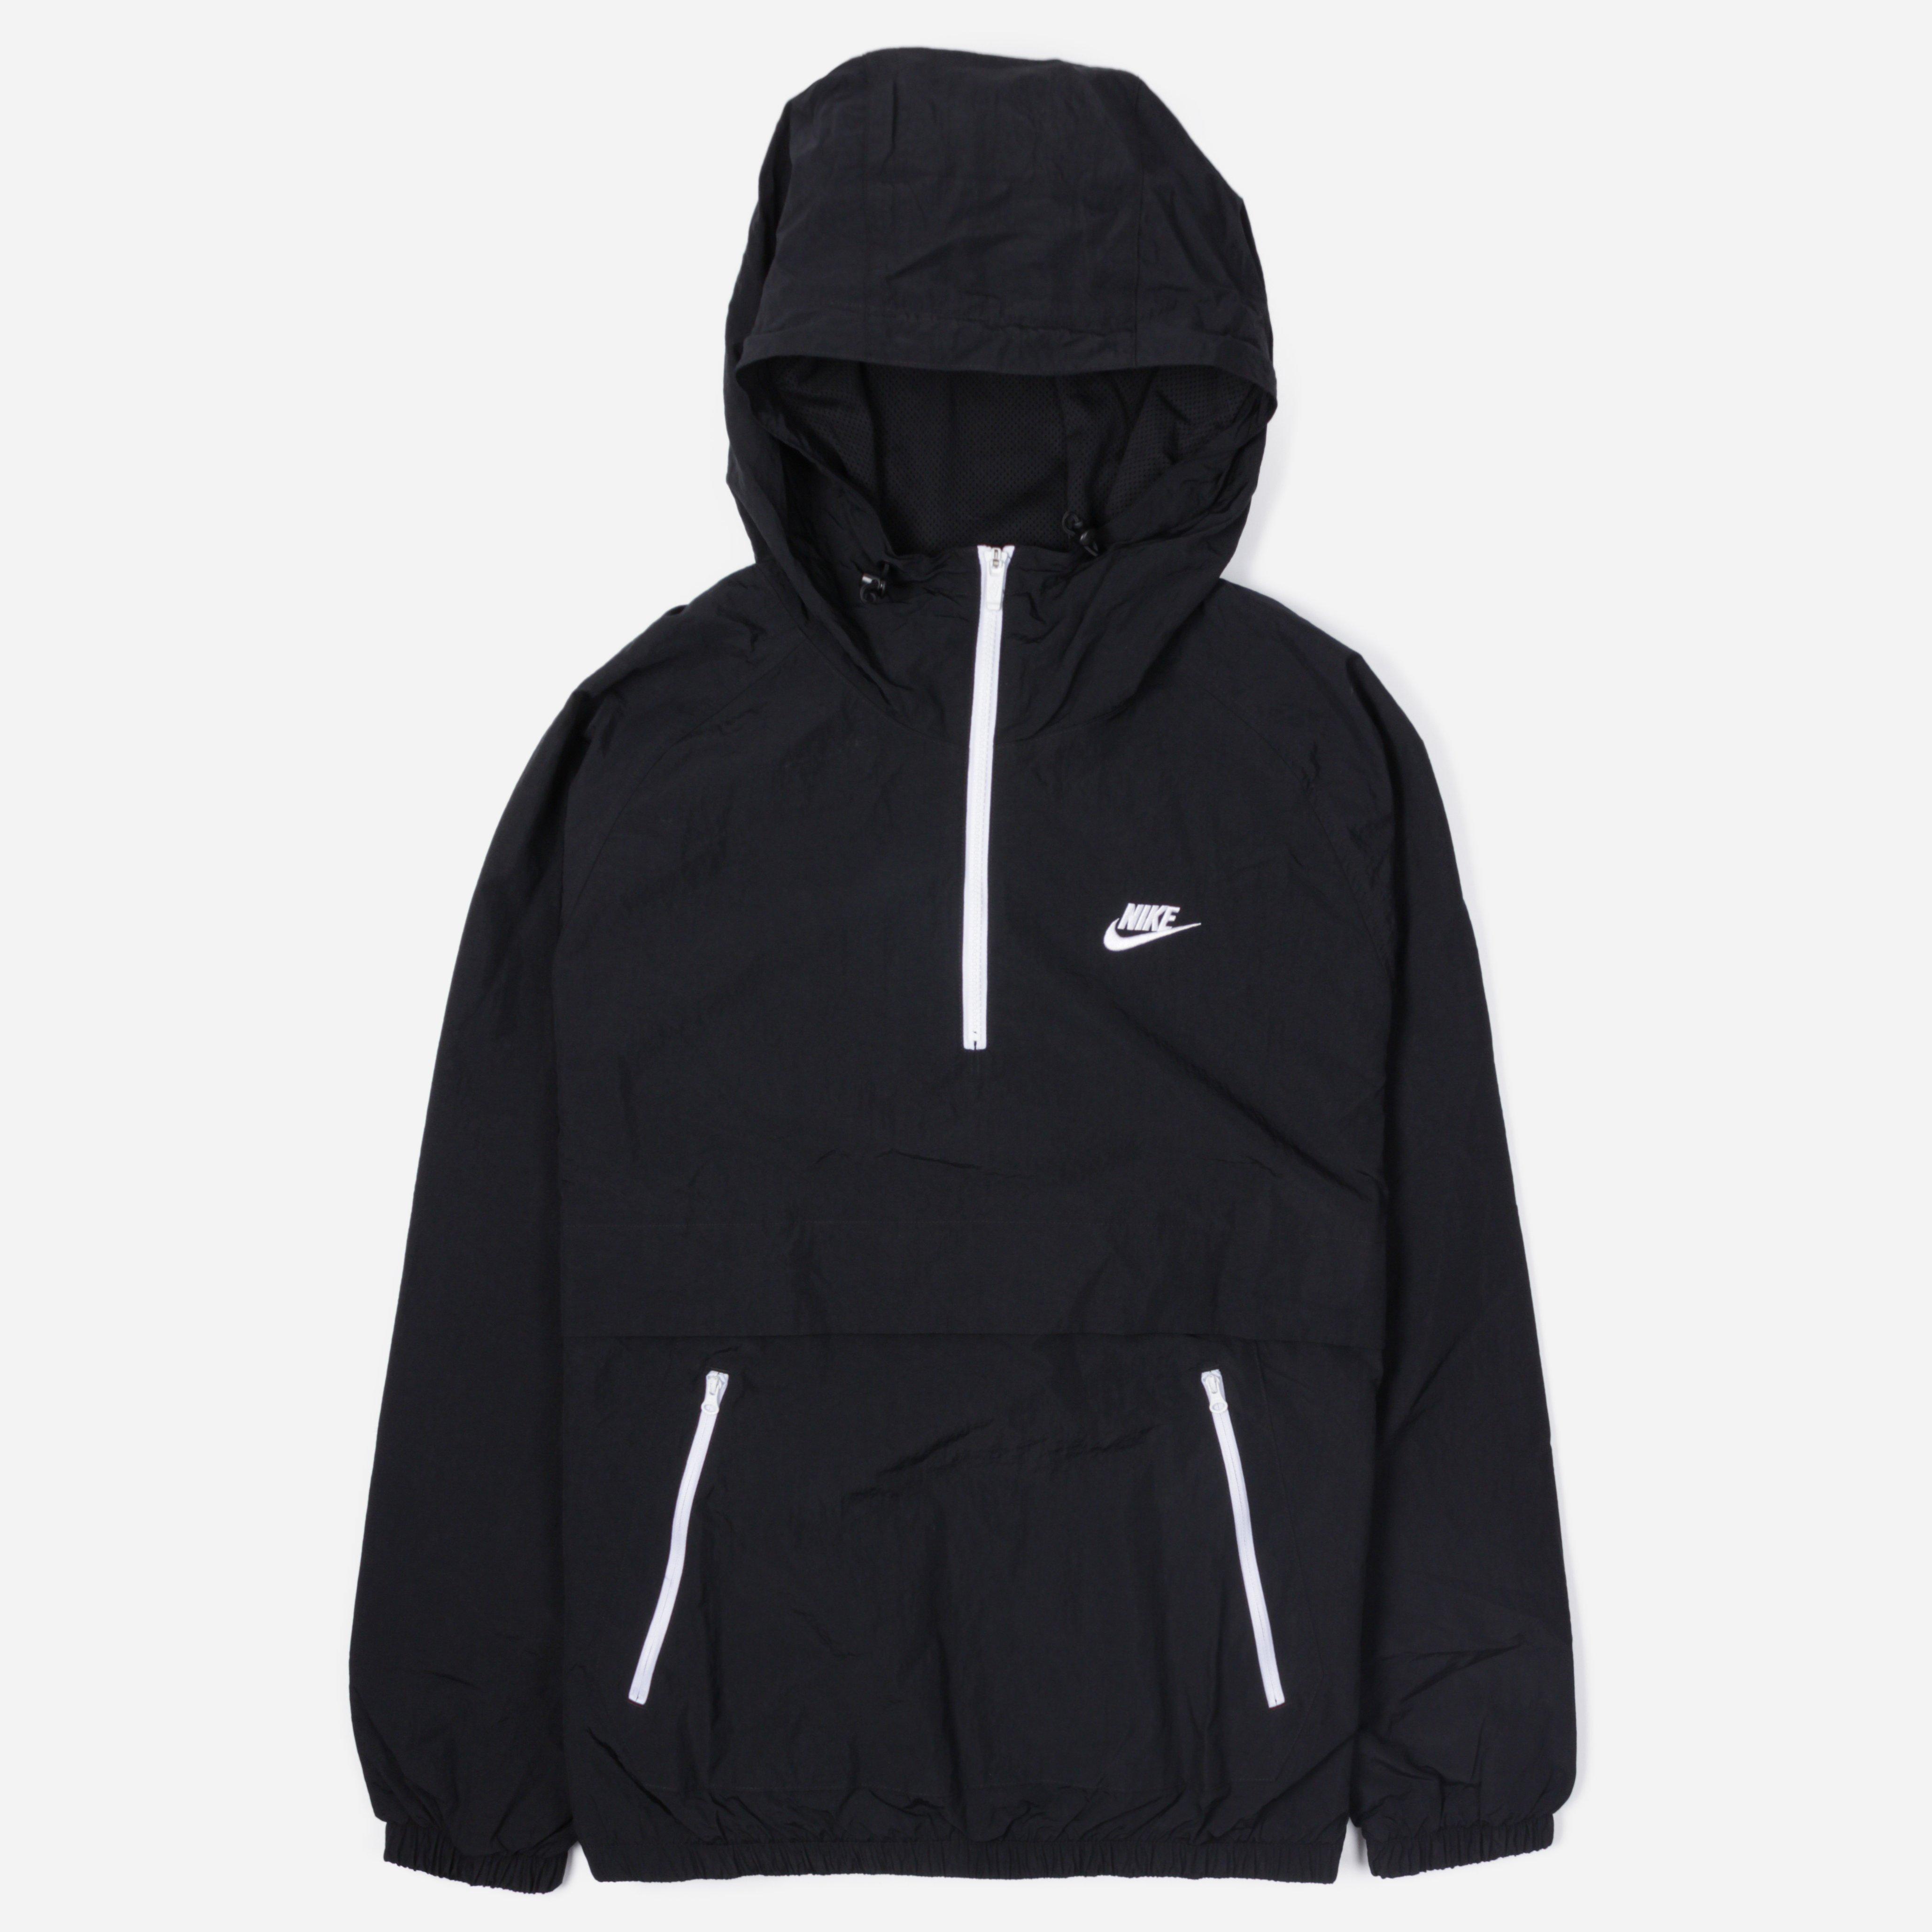 Nike Sportswear Woven Anorak Jacket in Black for Men - Lyst